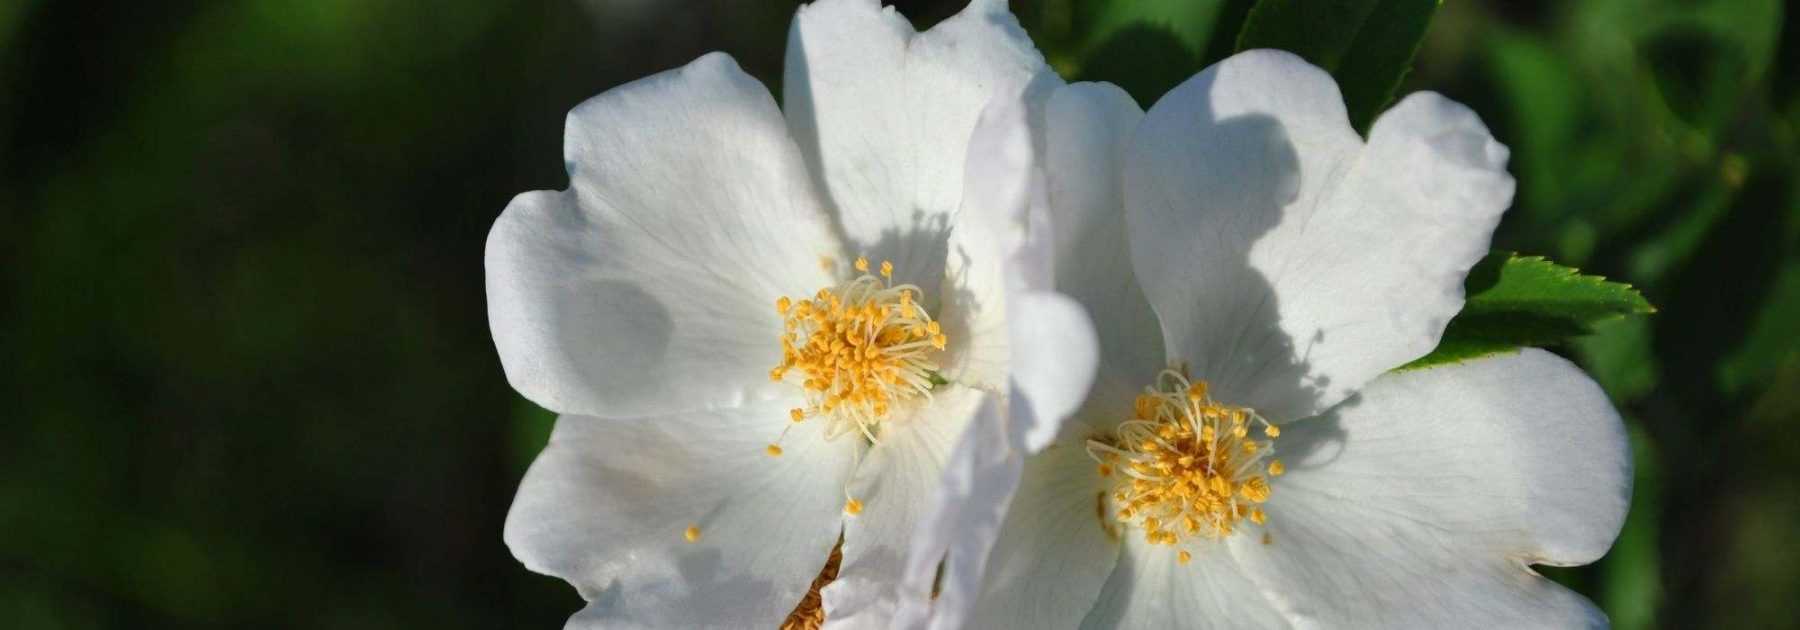 5 rosiers à fleurs d’églantines blanches